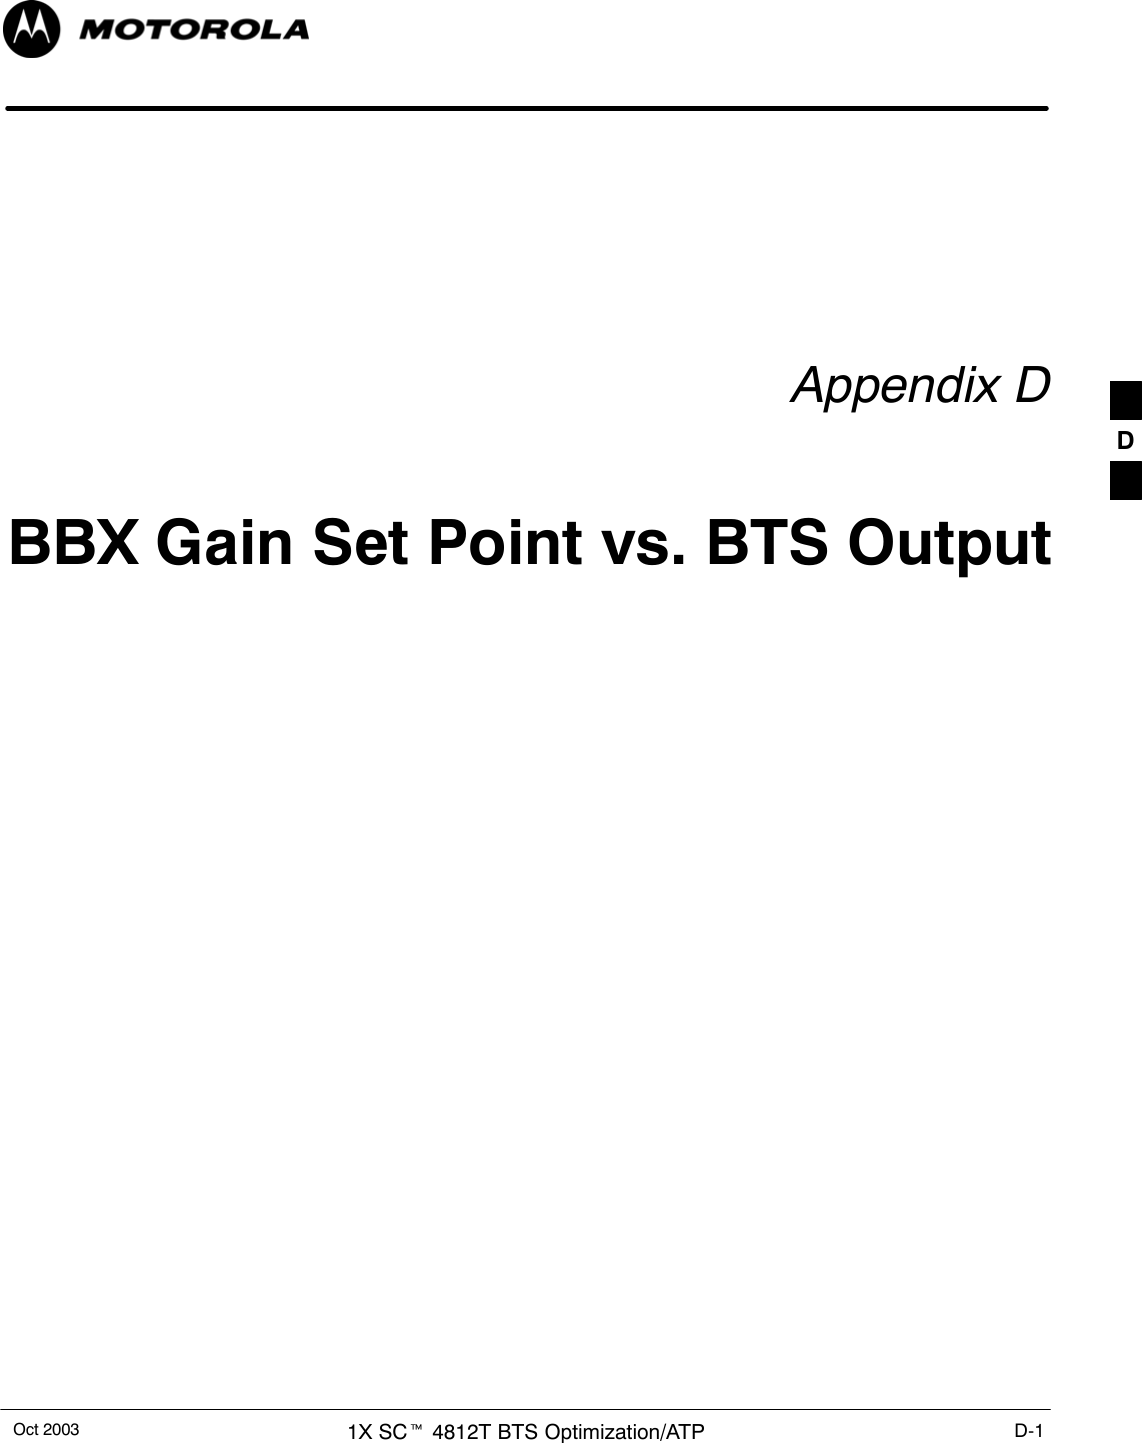 Oct 2003 1X SCt 4812T BTS Optimization/ATP D-1Appendix DBBX Gain Set Point vs. BTS OutputD